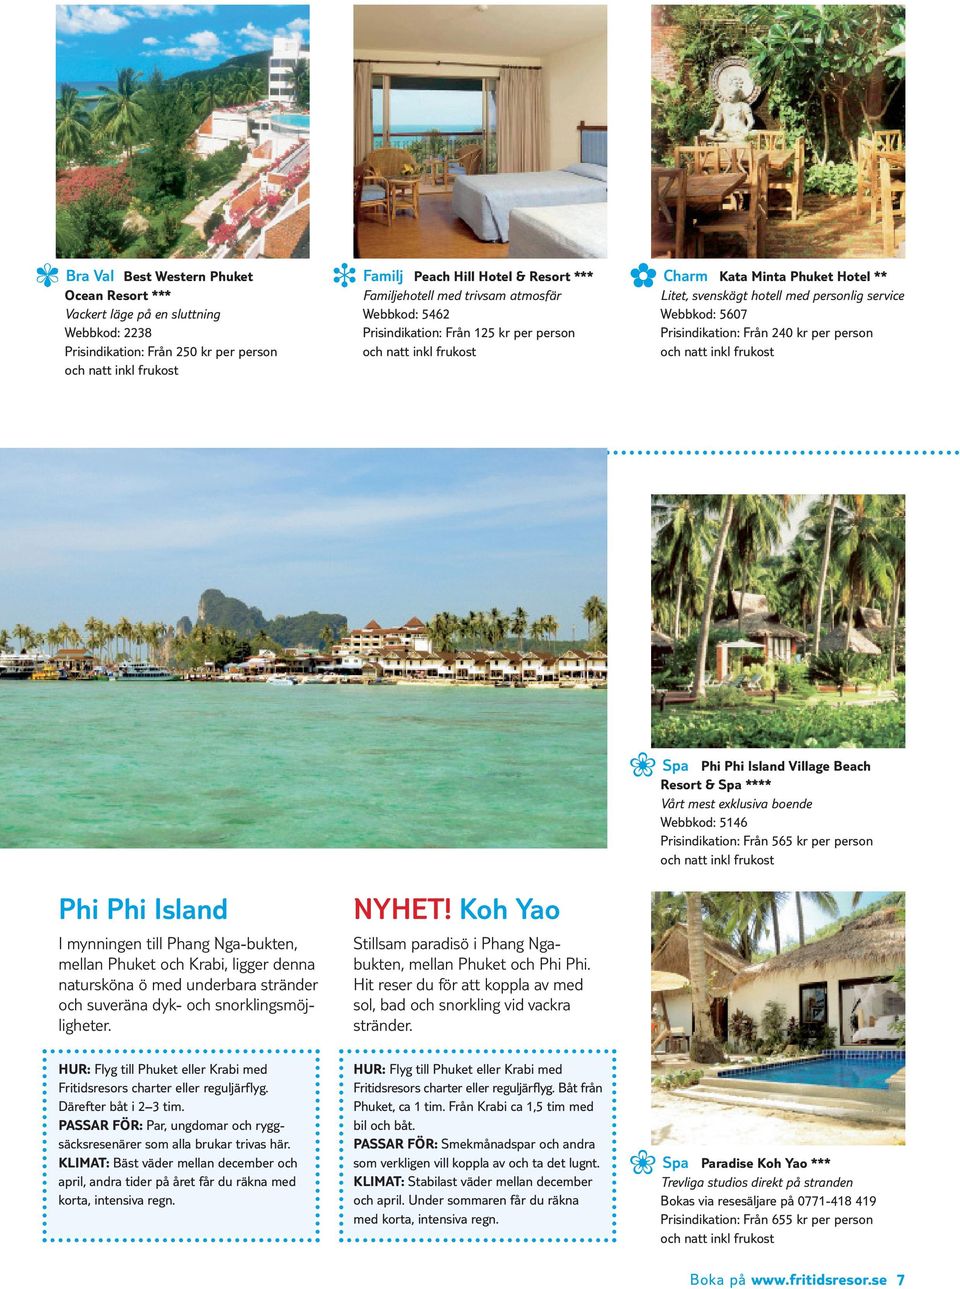 Island Village Beach Resort & Spa **** Vårt mest exklusiva boende Webbkod: 5146 Prisindikation: Från 565 kr per person Phi Phi Island I mynningen till Phang Nga-bukten, mellan Phuket och Krabi,